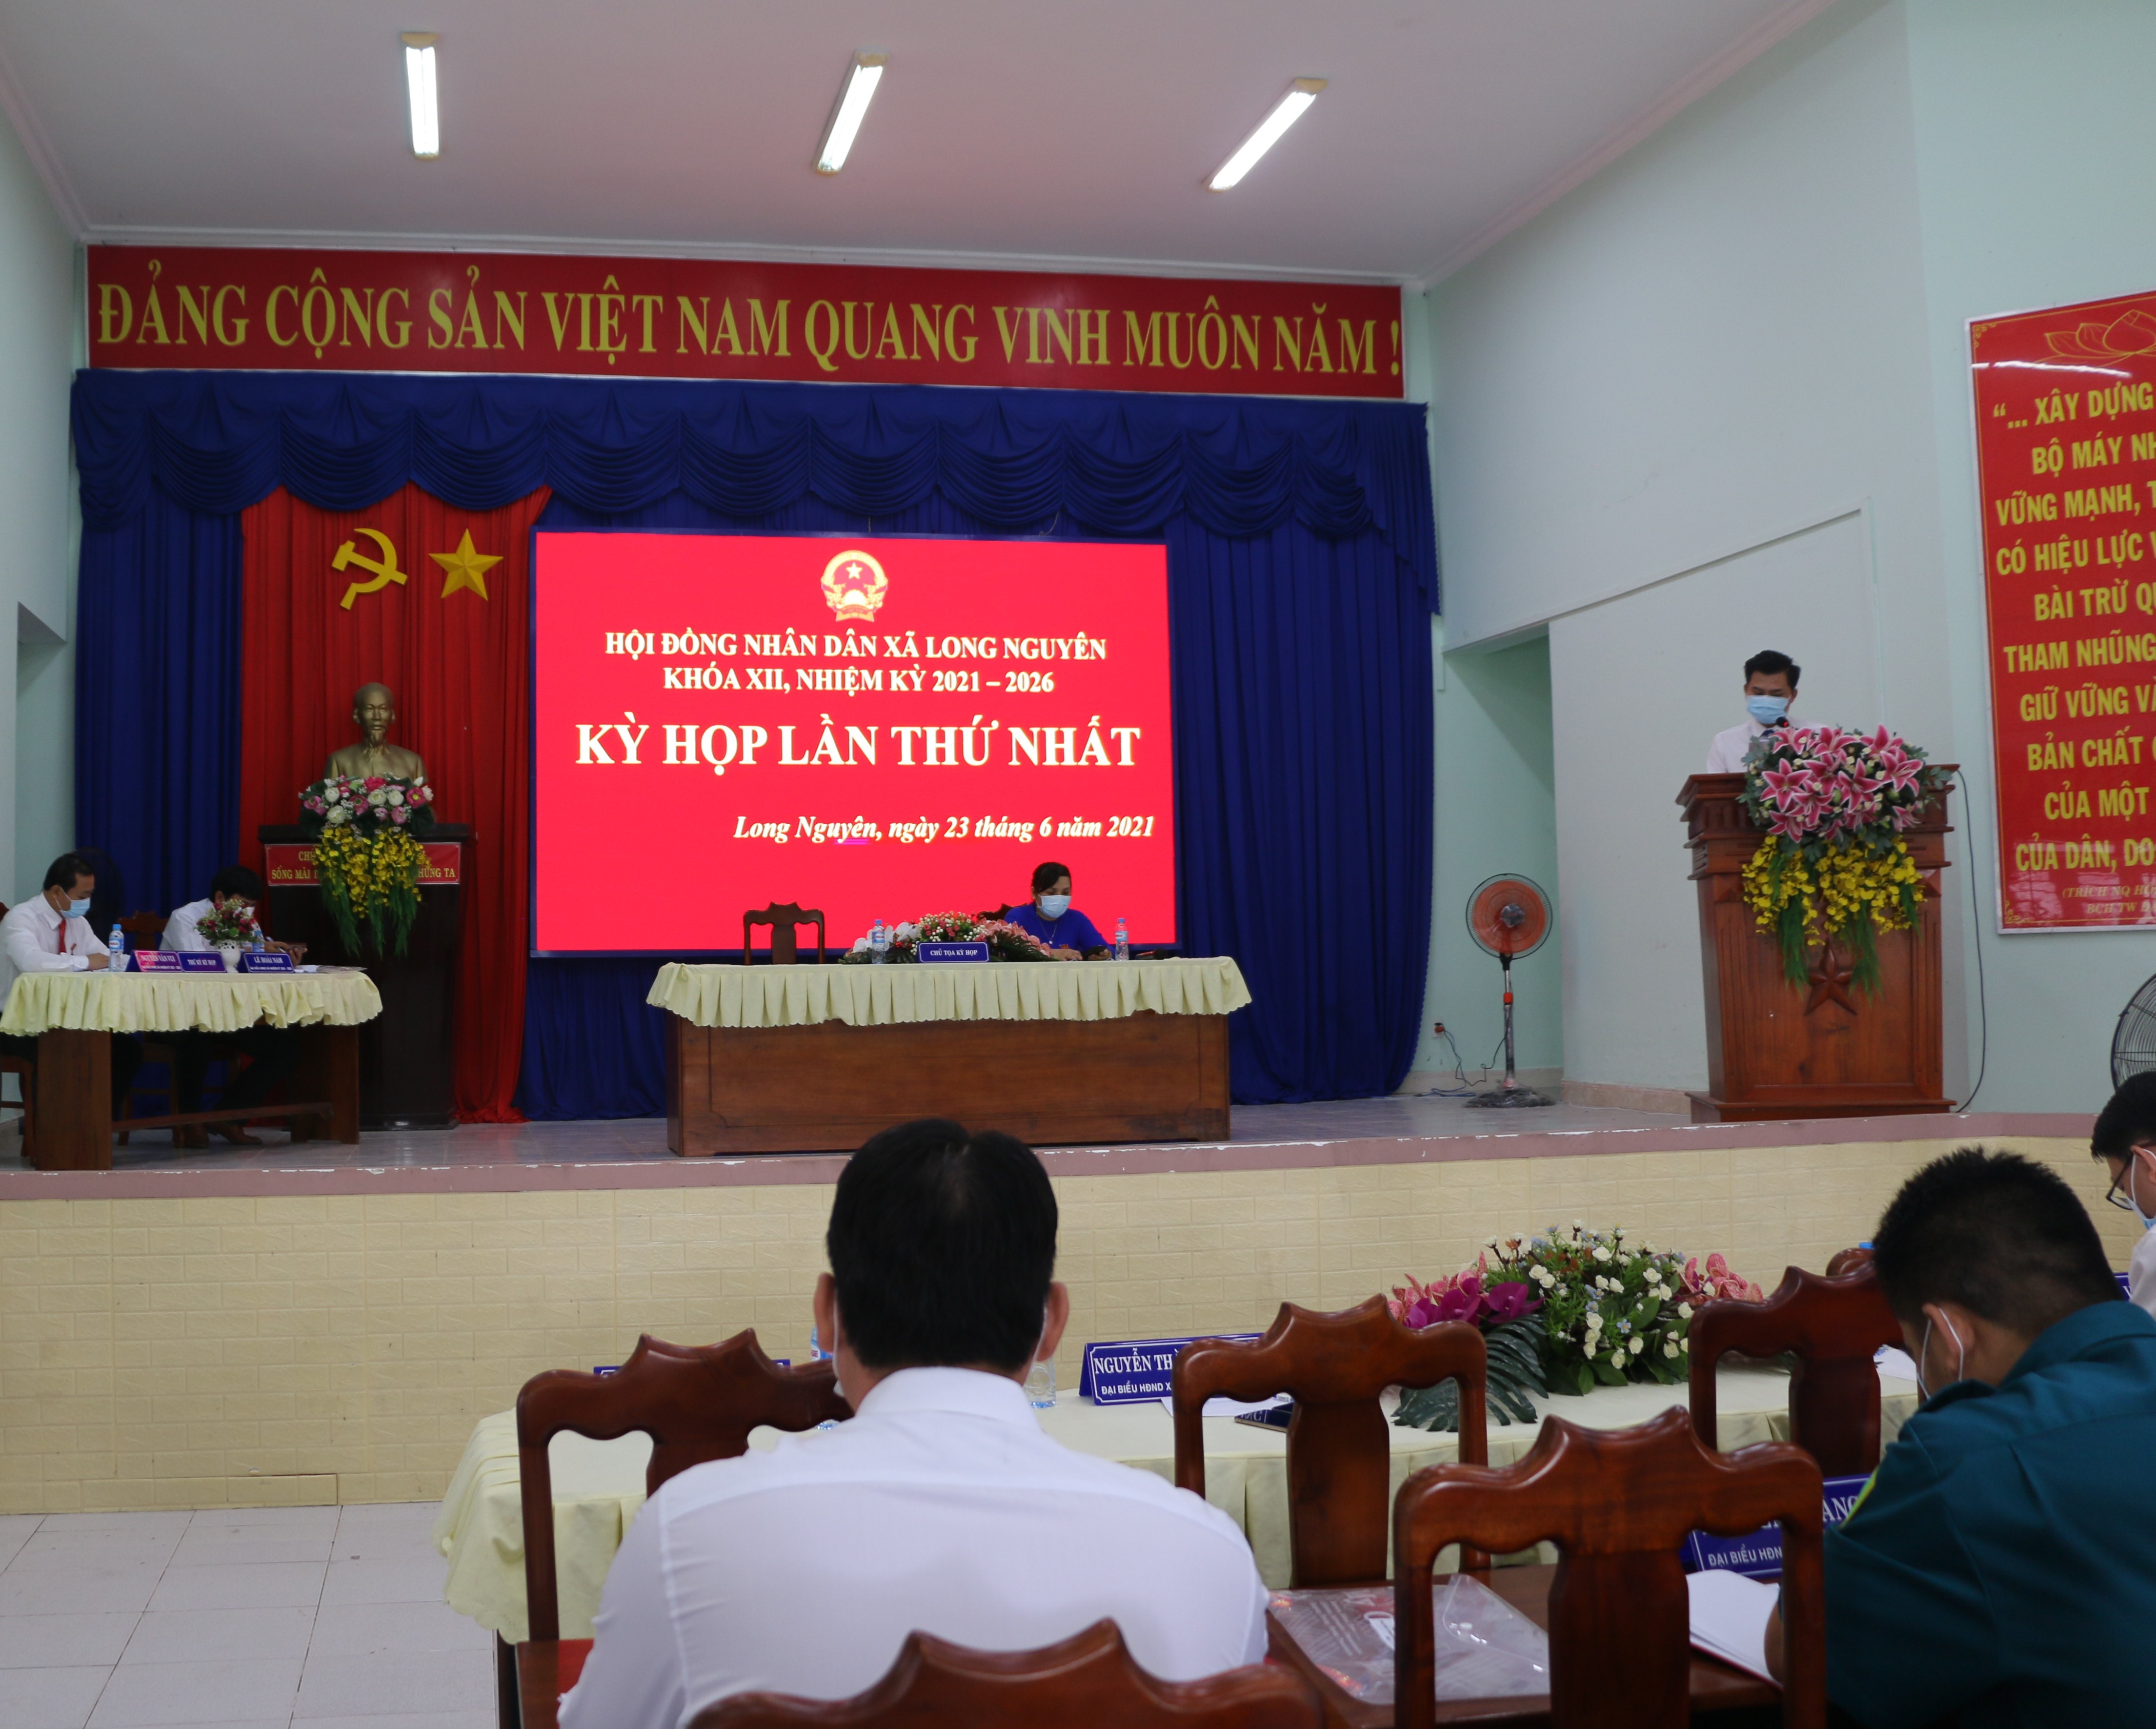 HĐND xã Long Nguyên tổ chức kỳ họp lần thứ nhất HĐND xã khóa XII, nhiệm kỳ 2021-2026